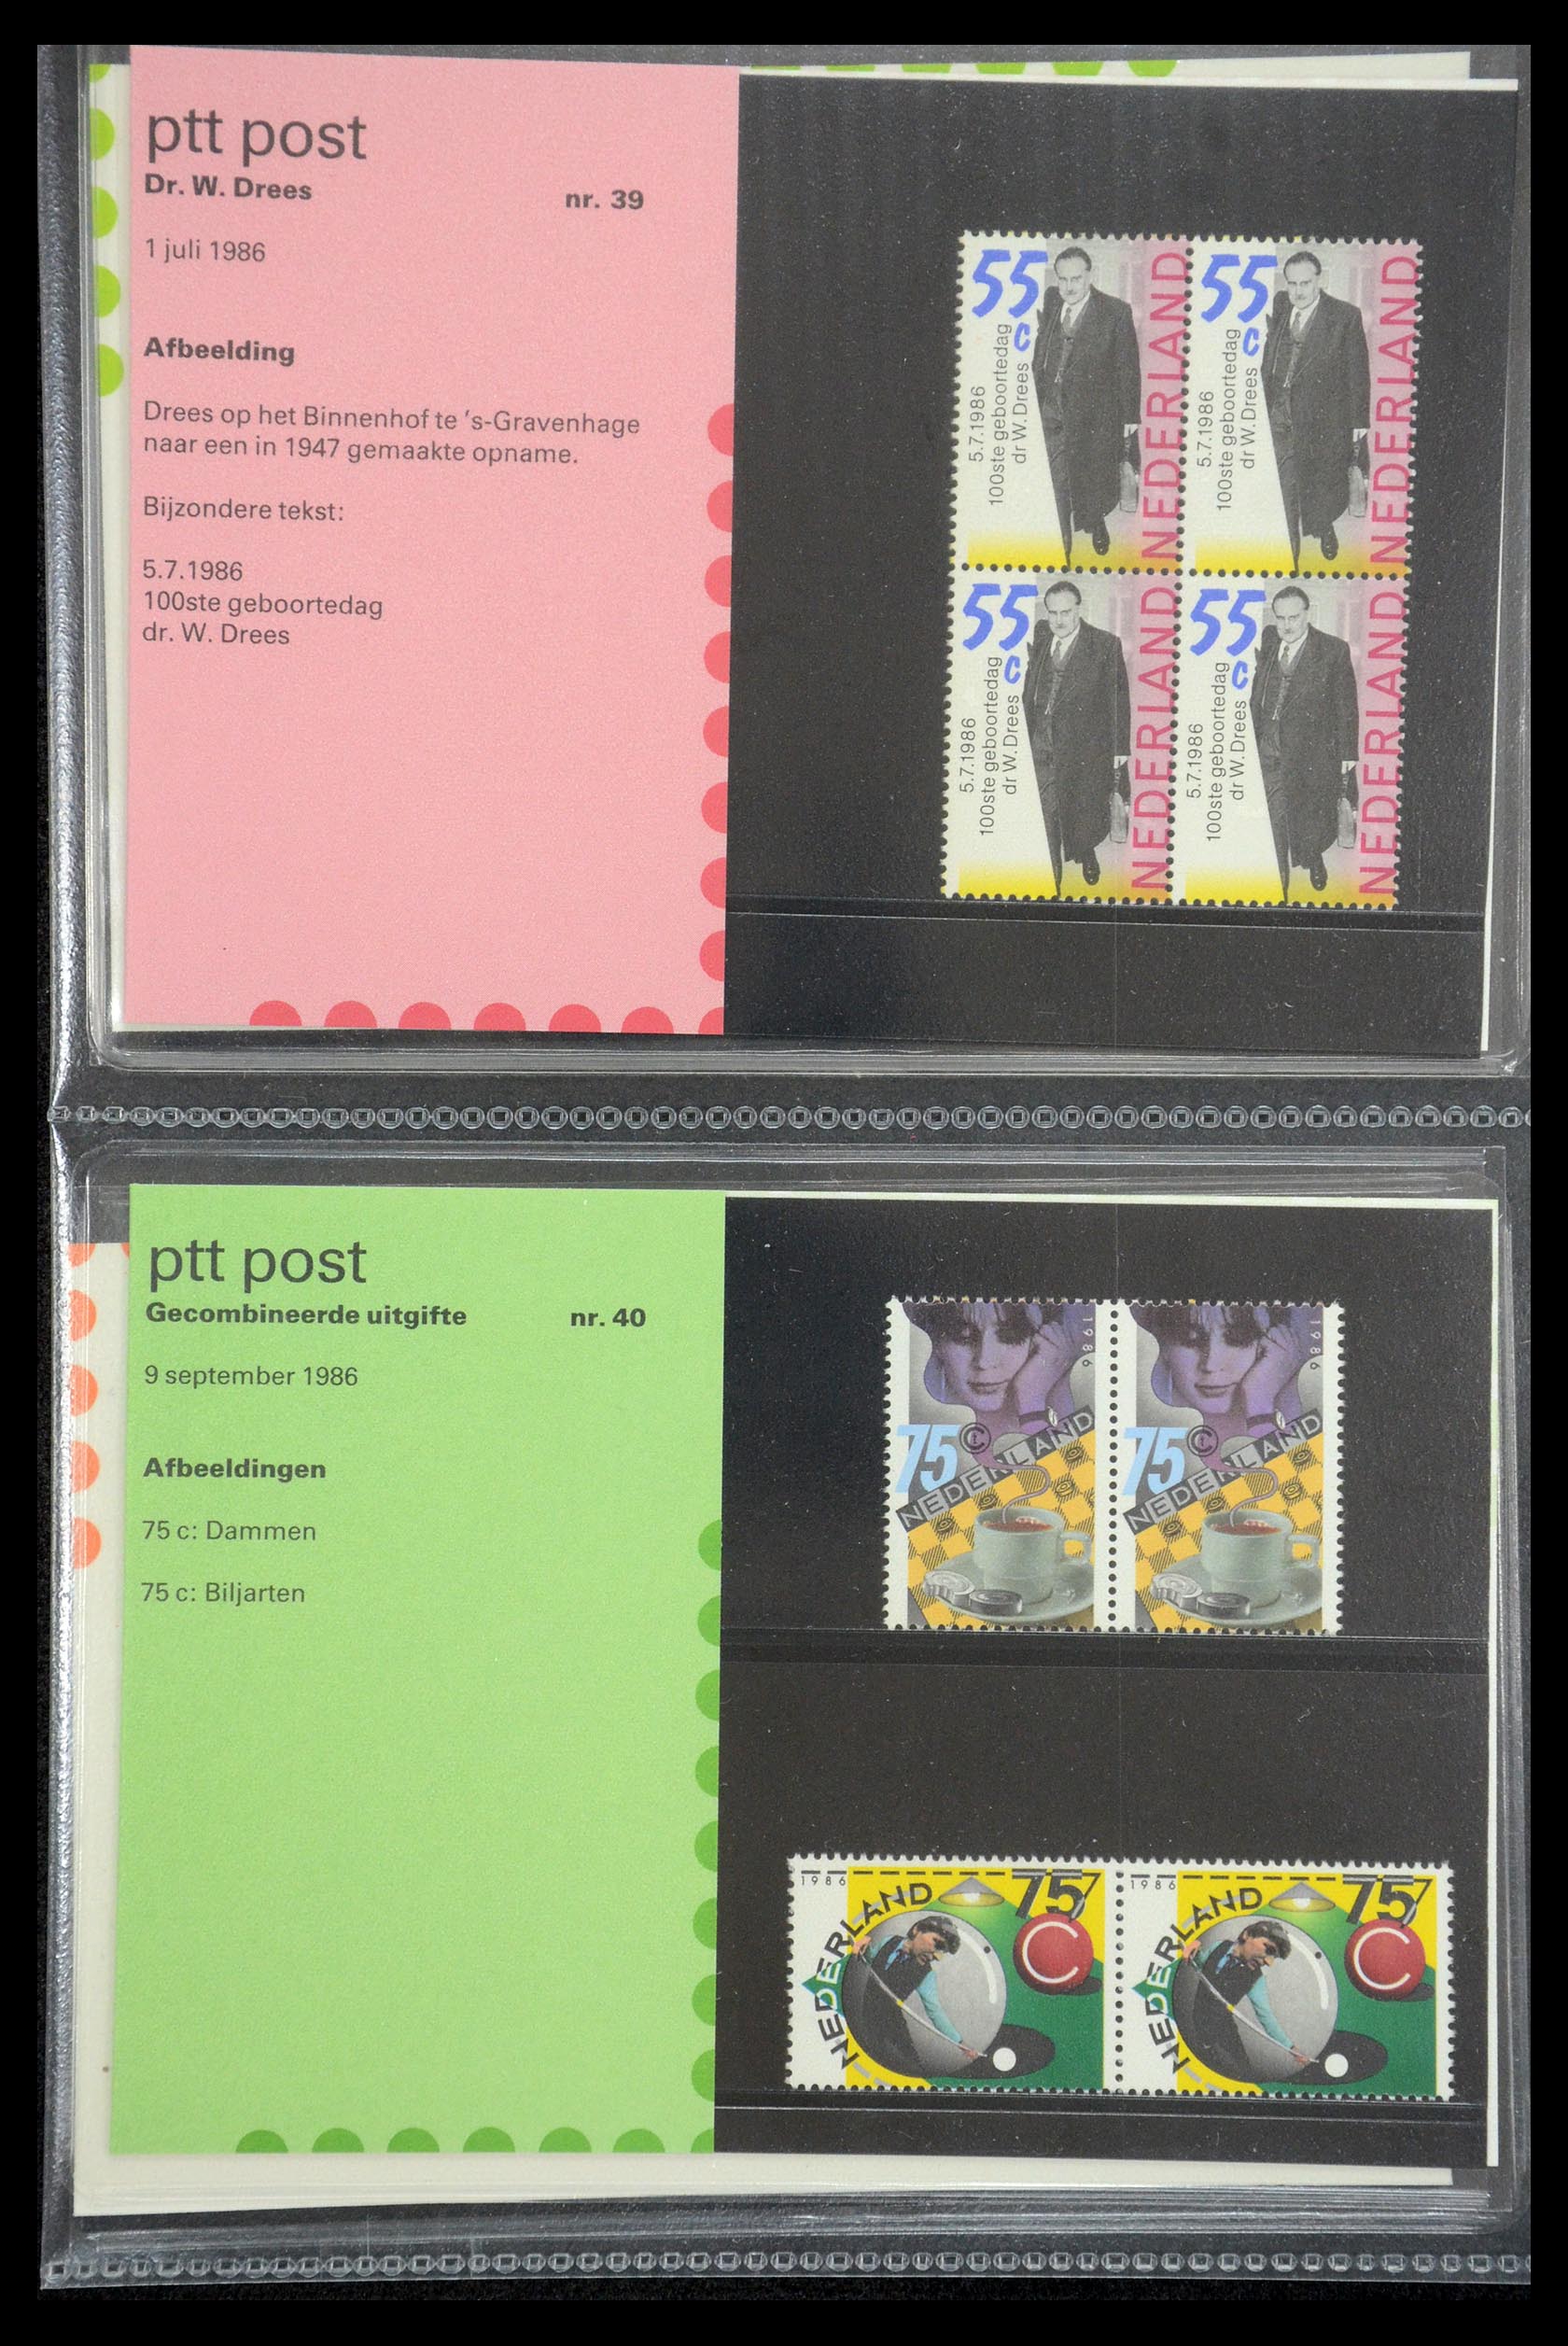 35187 020 - Stamp Collection 35187 Netherlands PTT presentation packs 1982-2019!